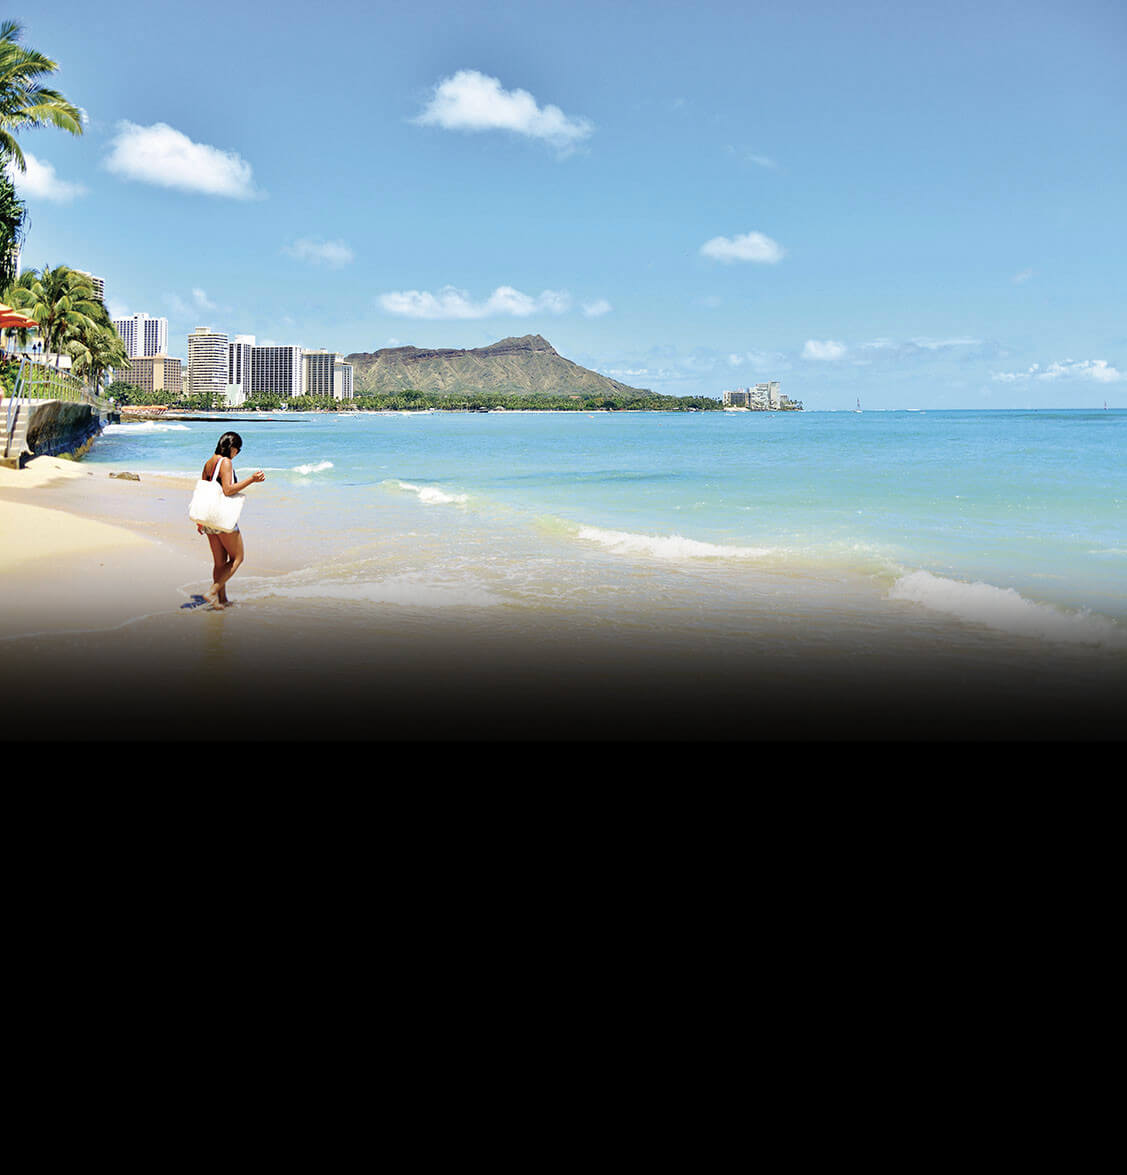 ハワイ旅行 ツアー 旅コーデ Tabicoorde 海外個人旅行の検索 予約サイト 阪急交通社